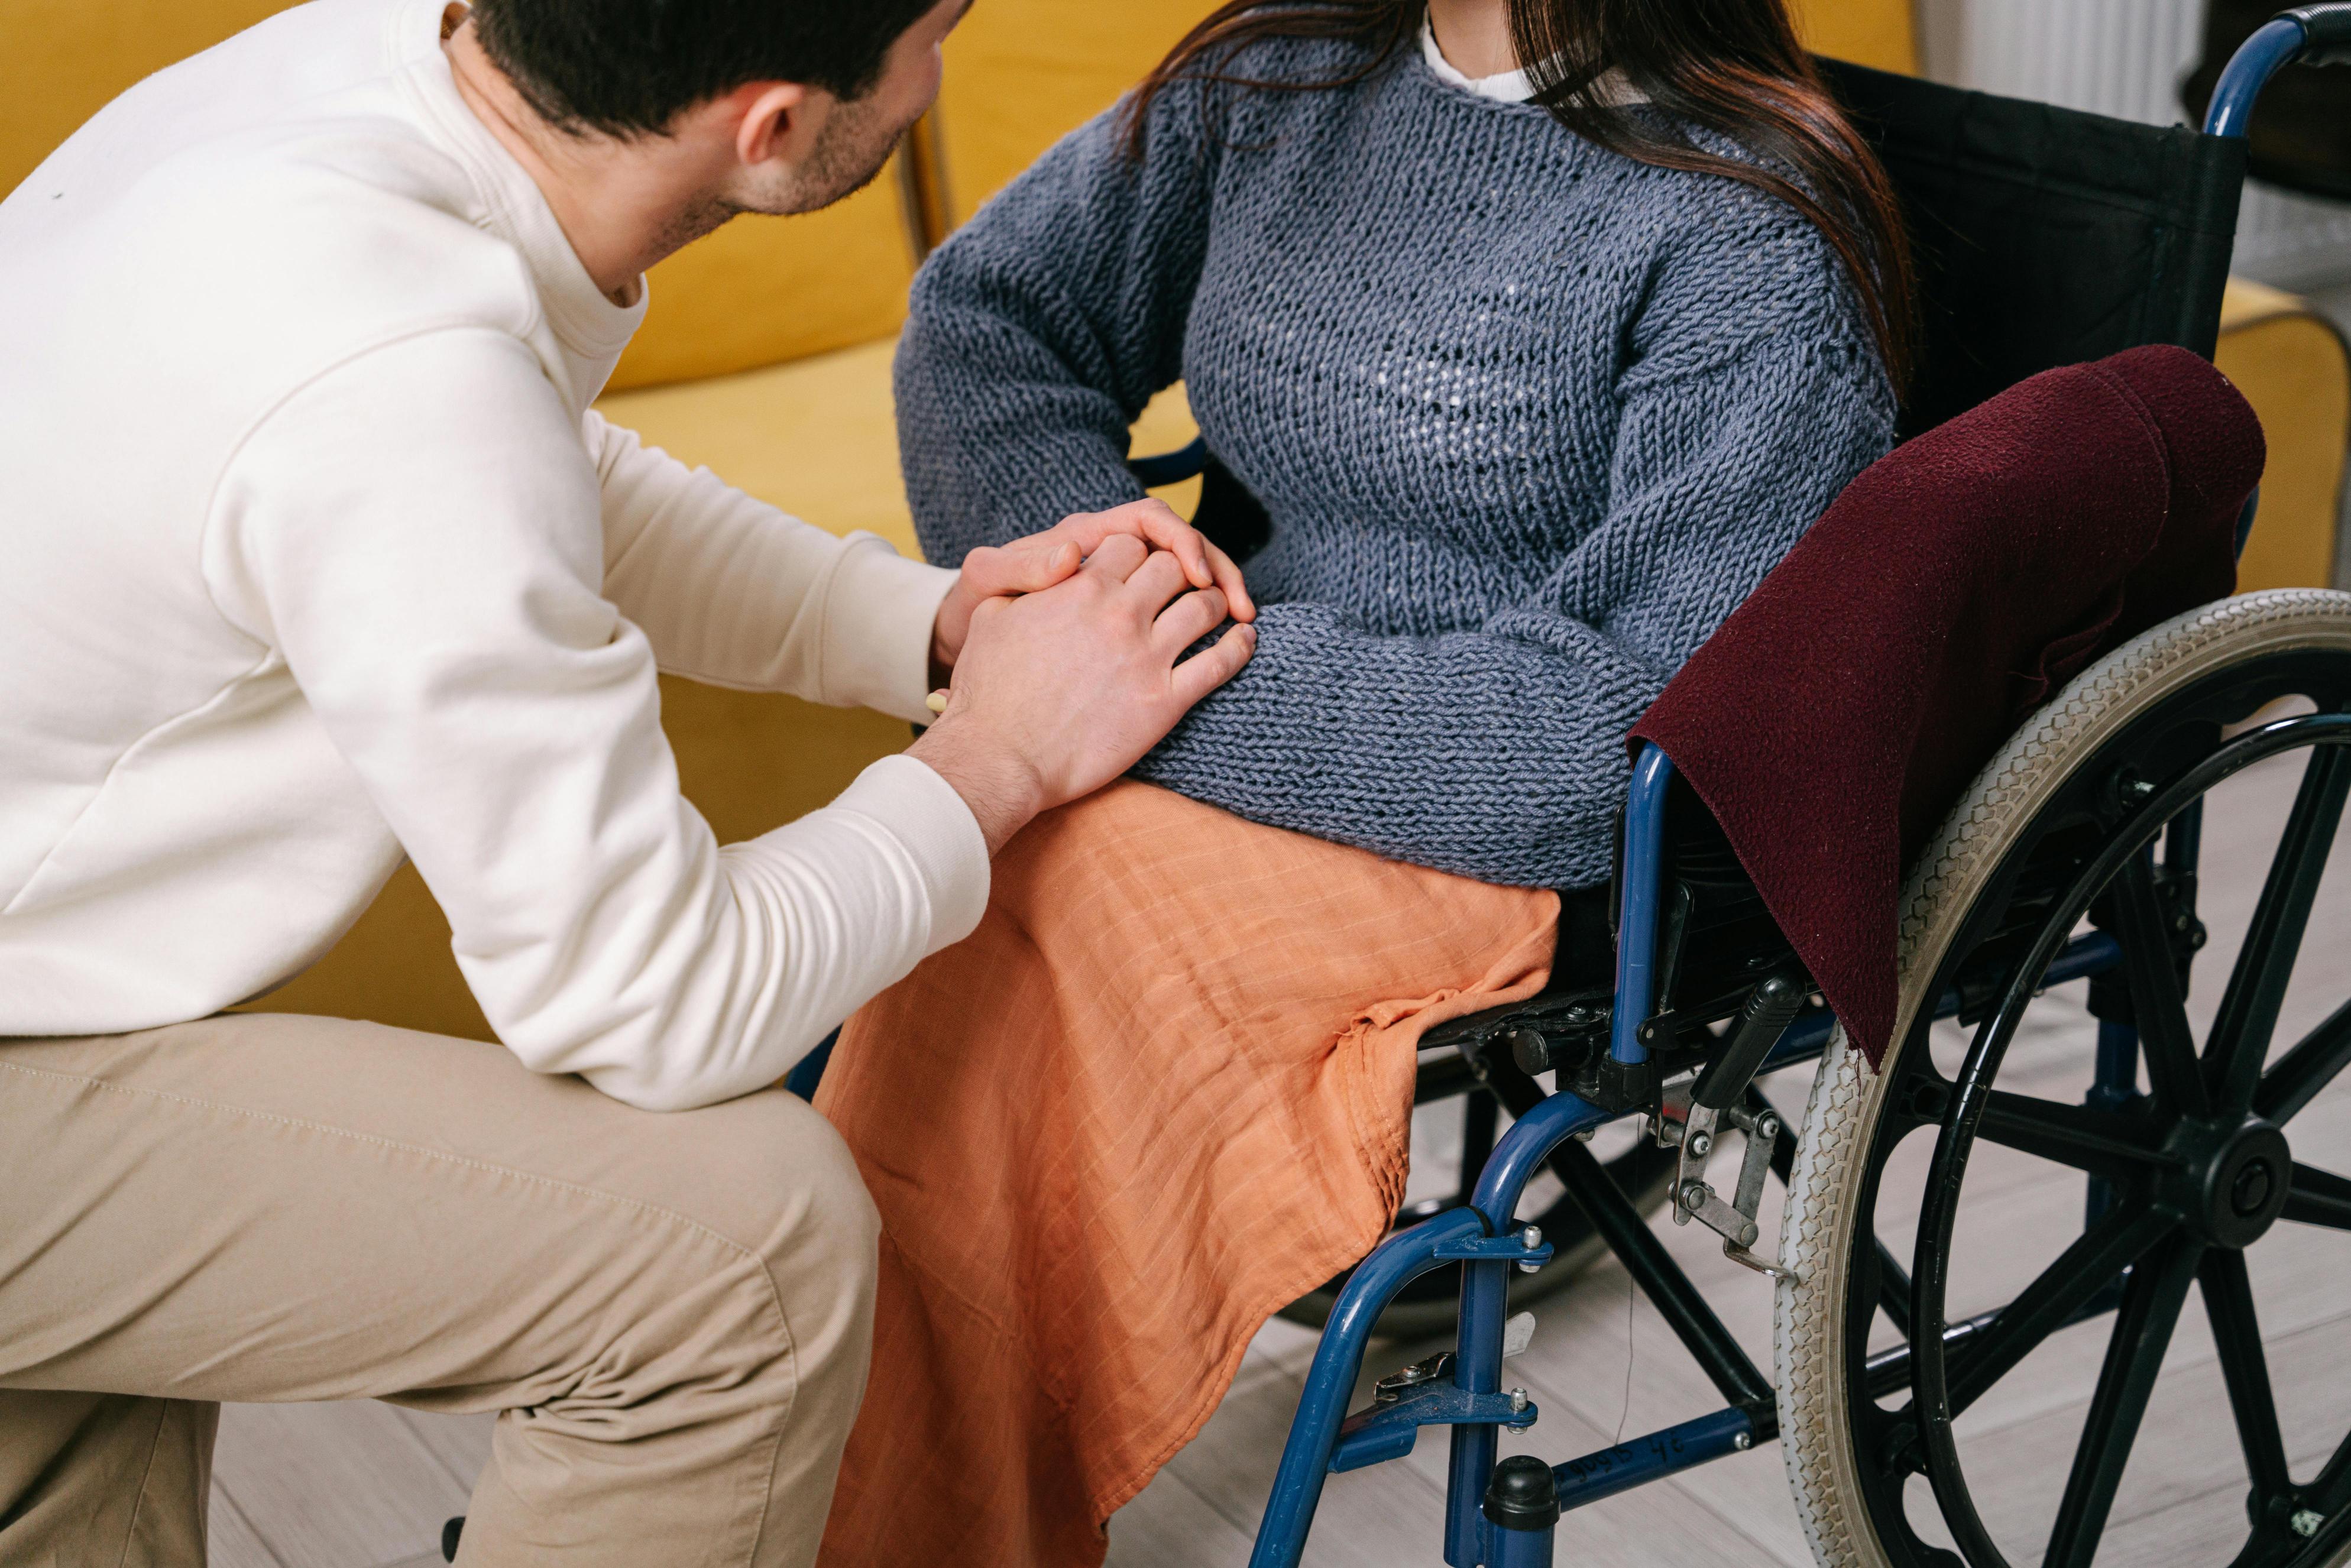 Przegląd systemu wsparcia dla osób niepełnosprawnych w polsce